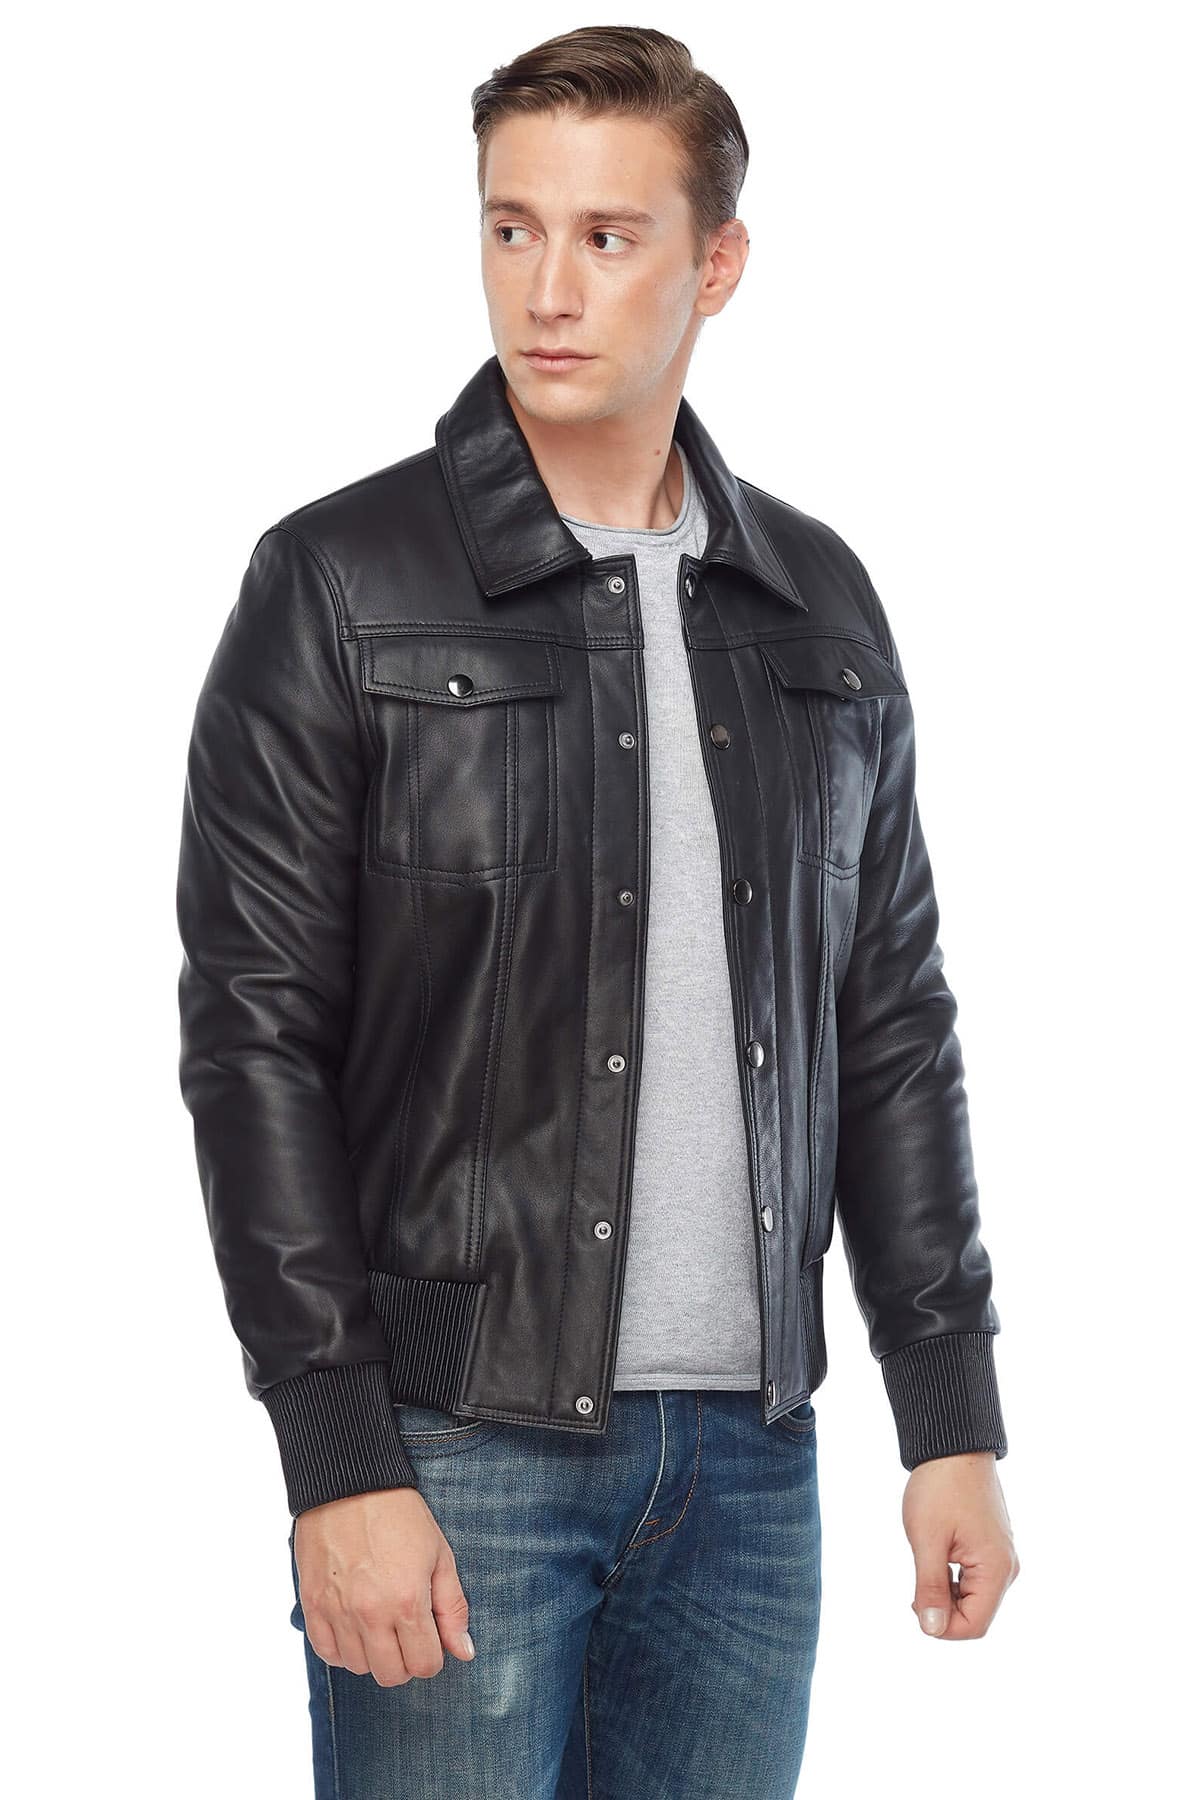 Will Chalker Genuine Leather Bomber Jacket Black Side